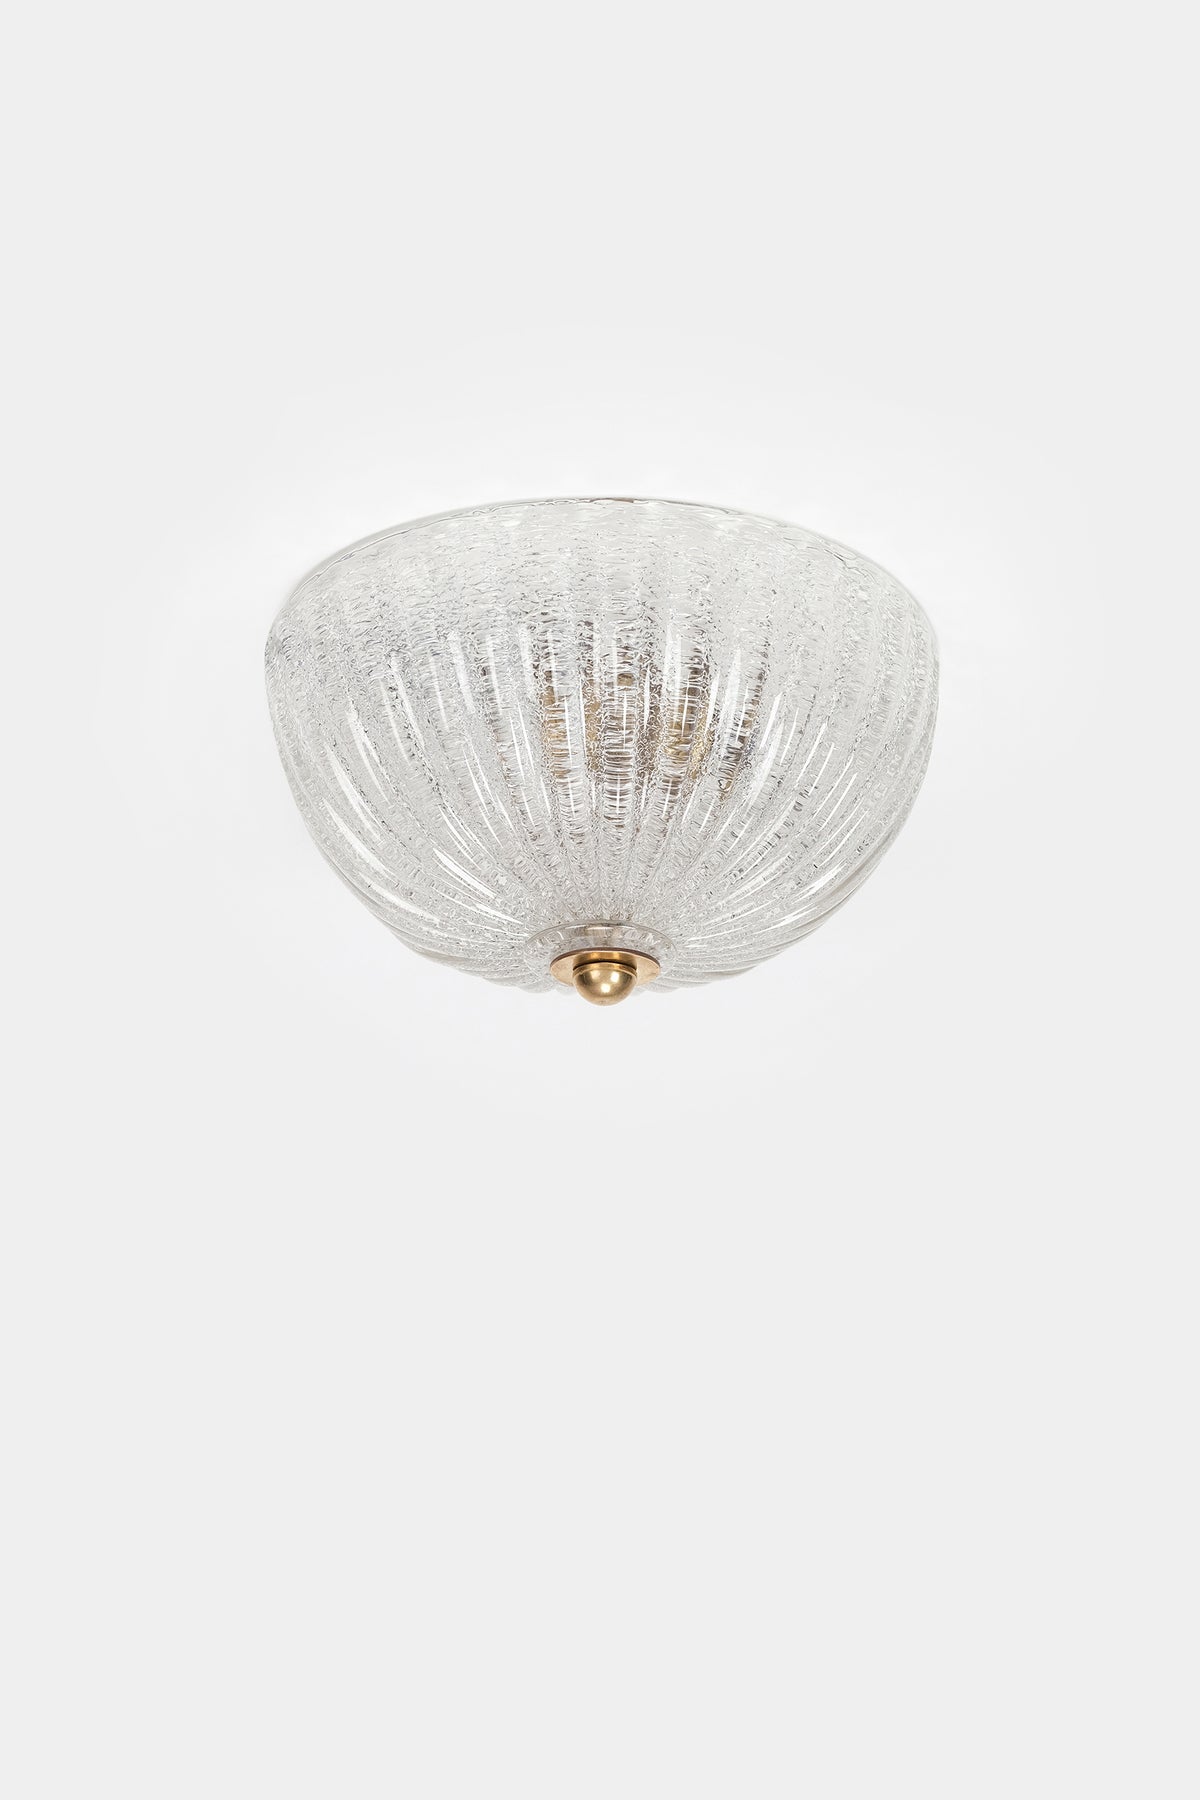 Deckenlampe mit Glasdom, Barovier & Toso, 40er